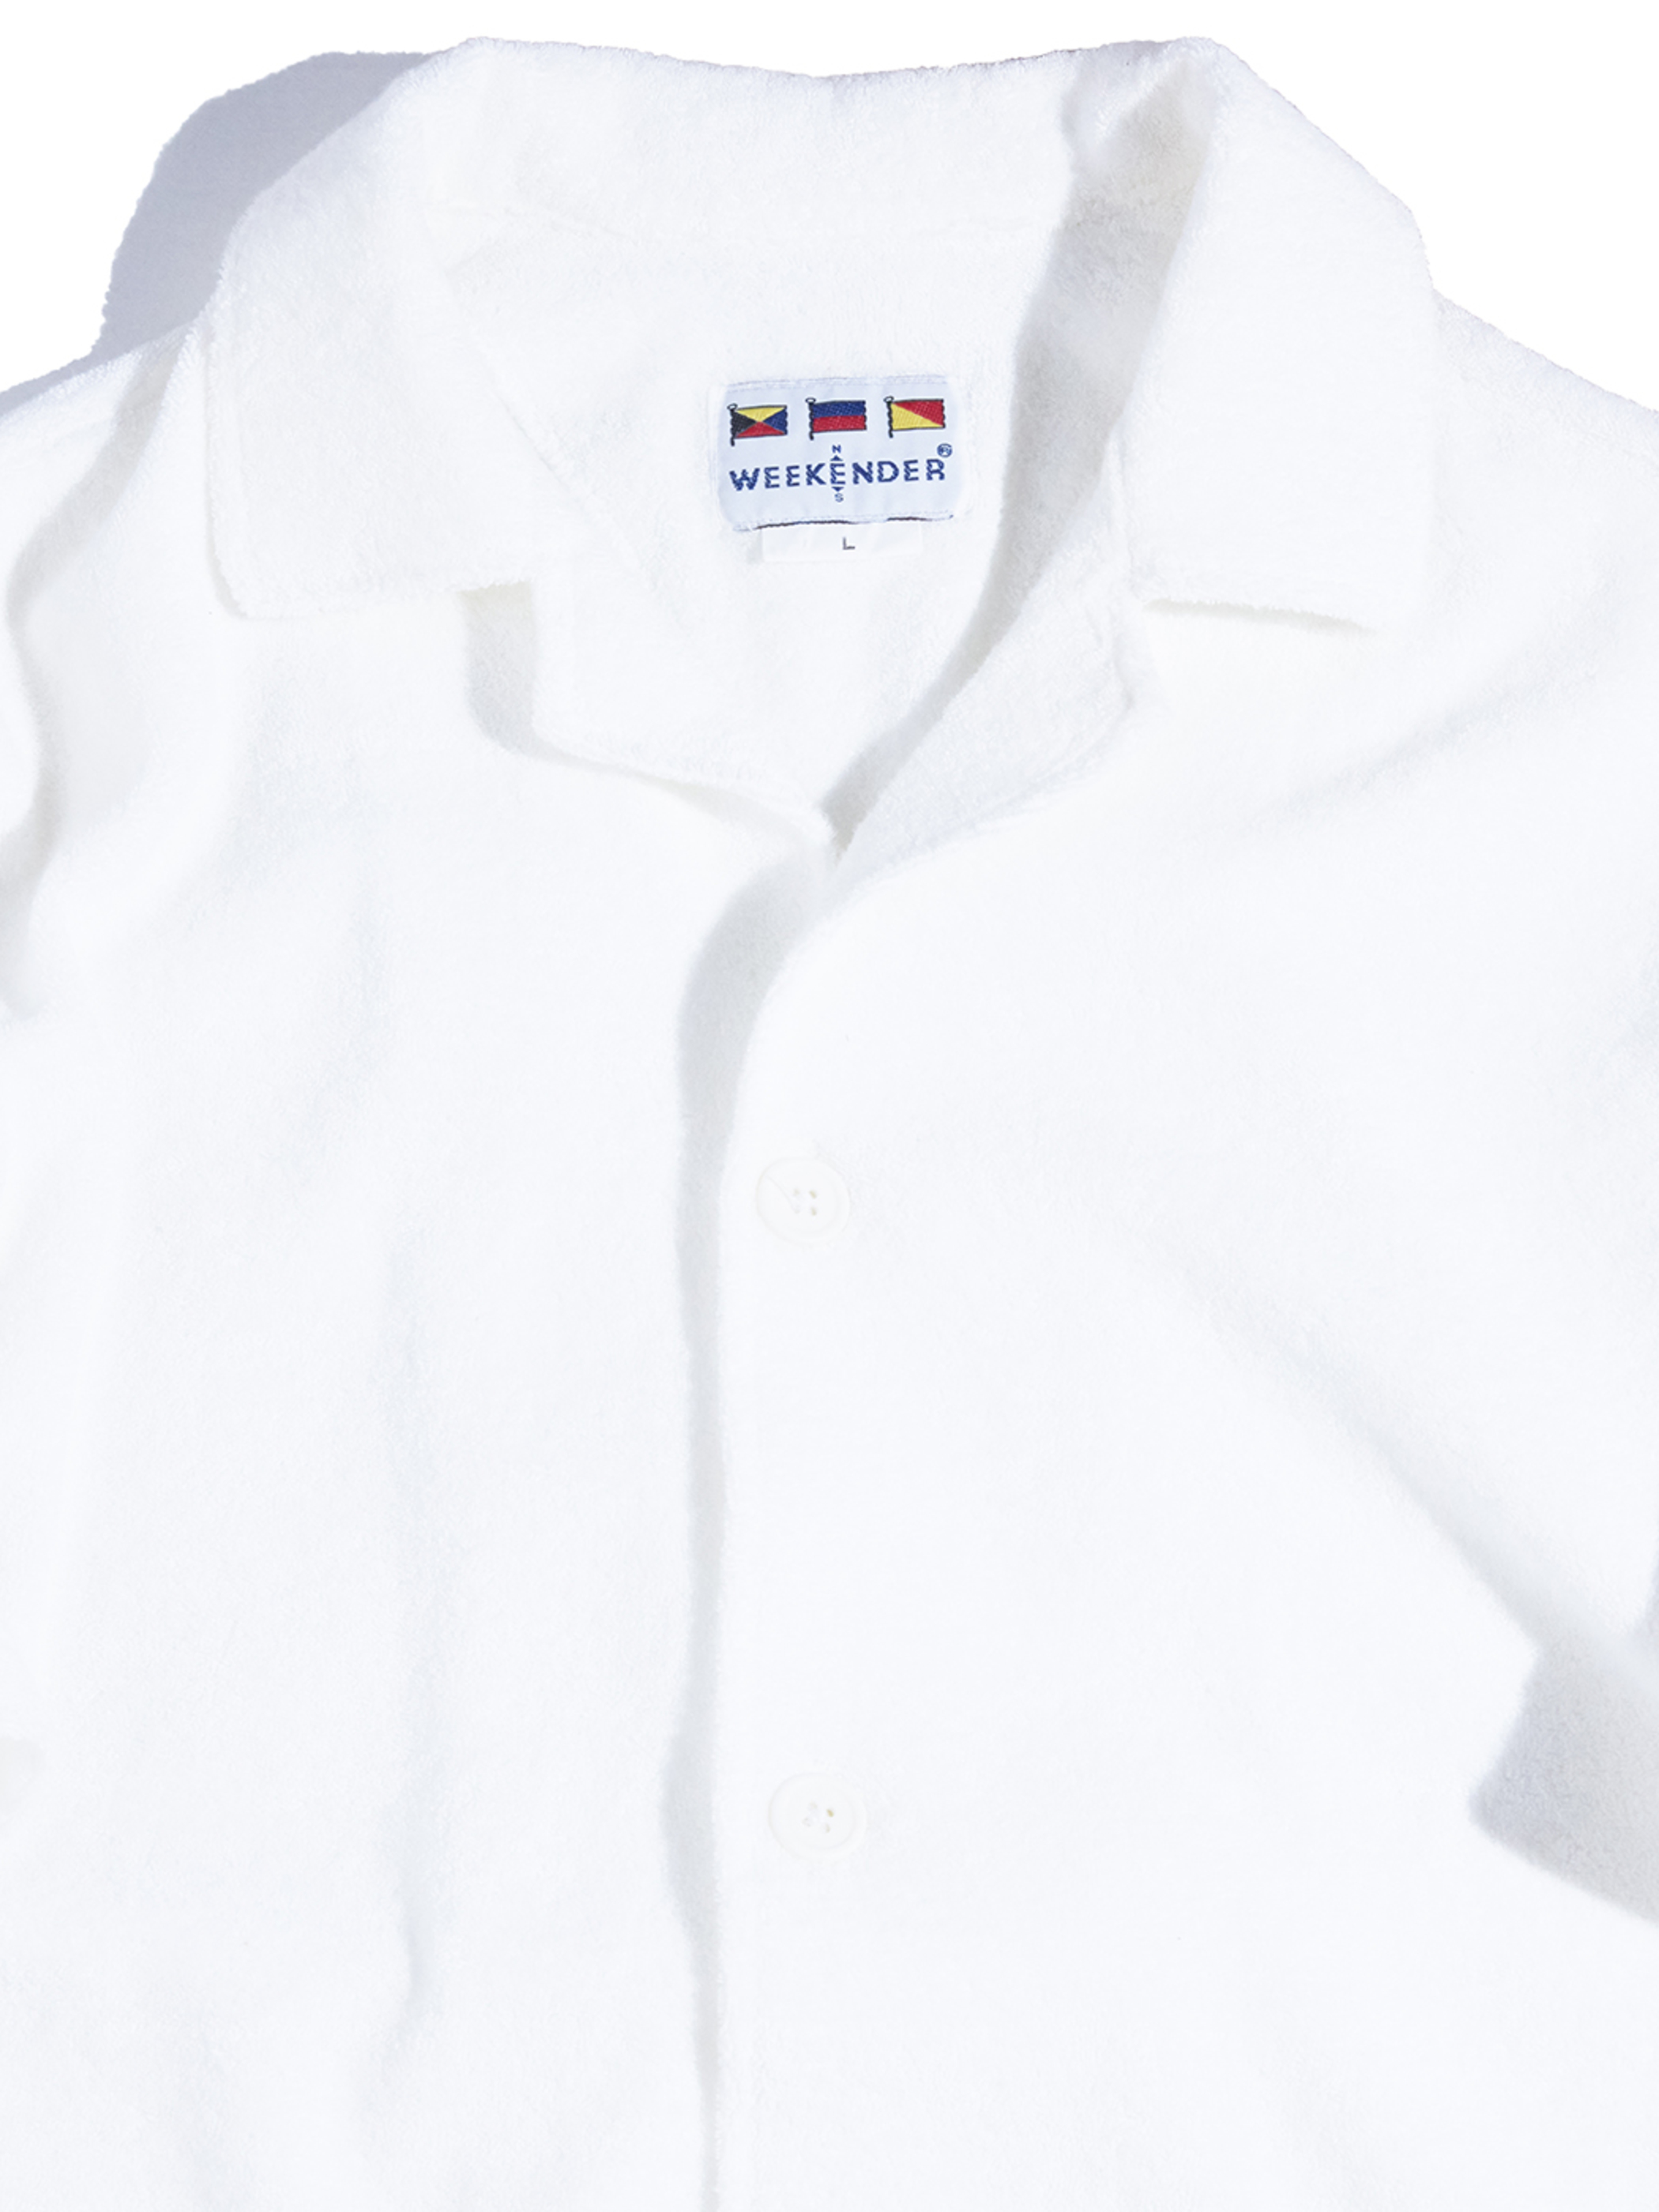 NOS 1980s "WEEKENDER" pile beach shirt -WHITE-